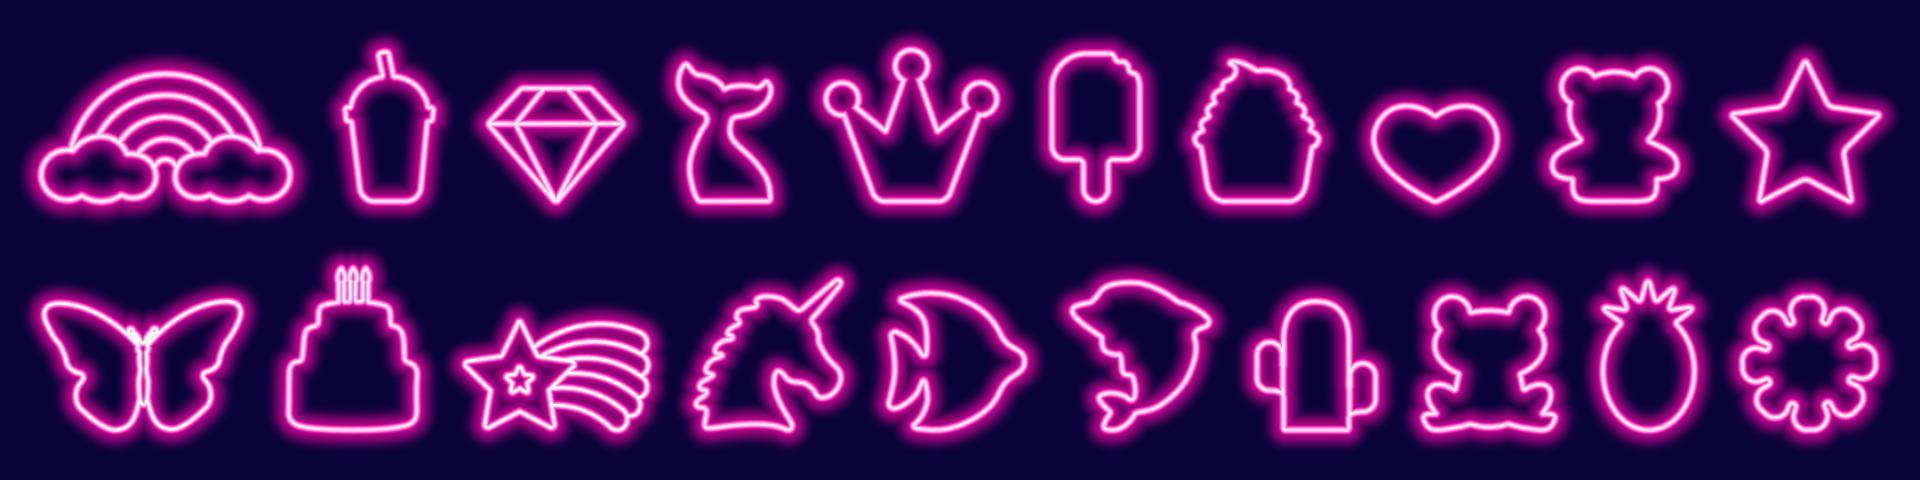 Große Reihe von LED-Fantasy-Geburtstags-, Lebensmittel- und Tier-Neonrahmen in trendiger rosa Farbe. leuchtende symbole und zeichen, einhorn, regenbogen, schmetterling, krone, stern, kuchen. vektorillustration im neonstil vektor